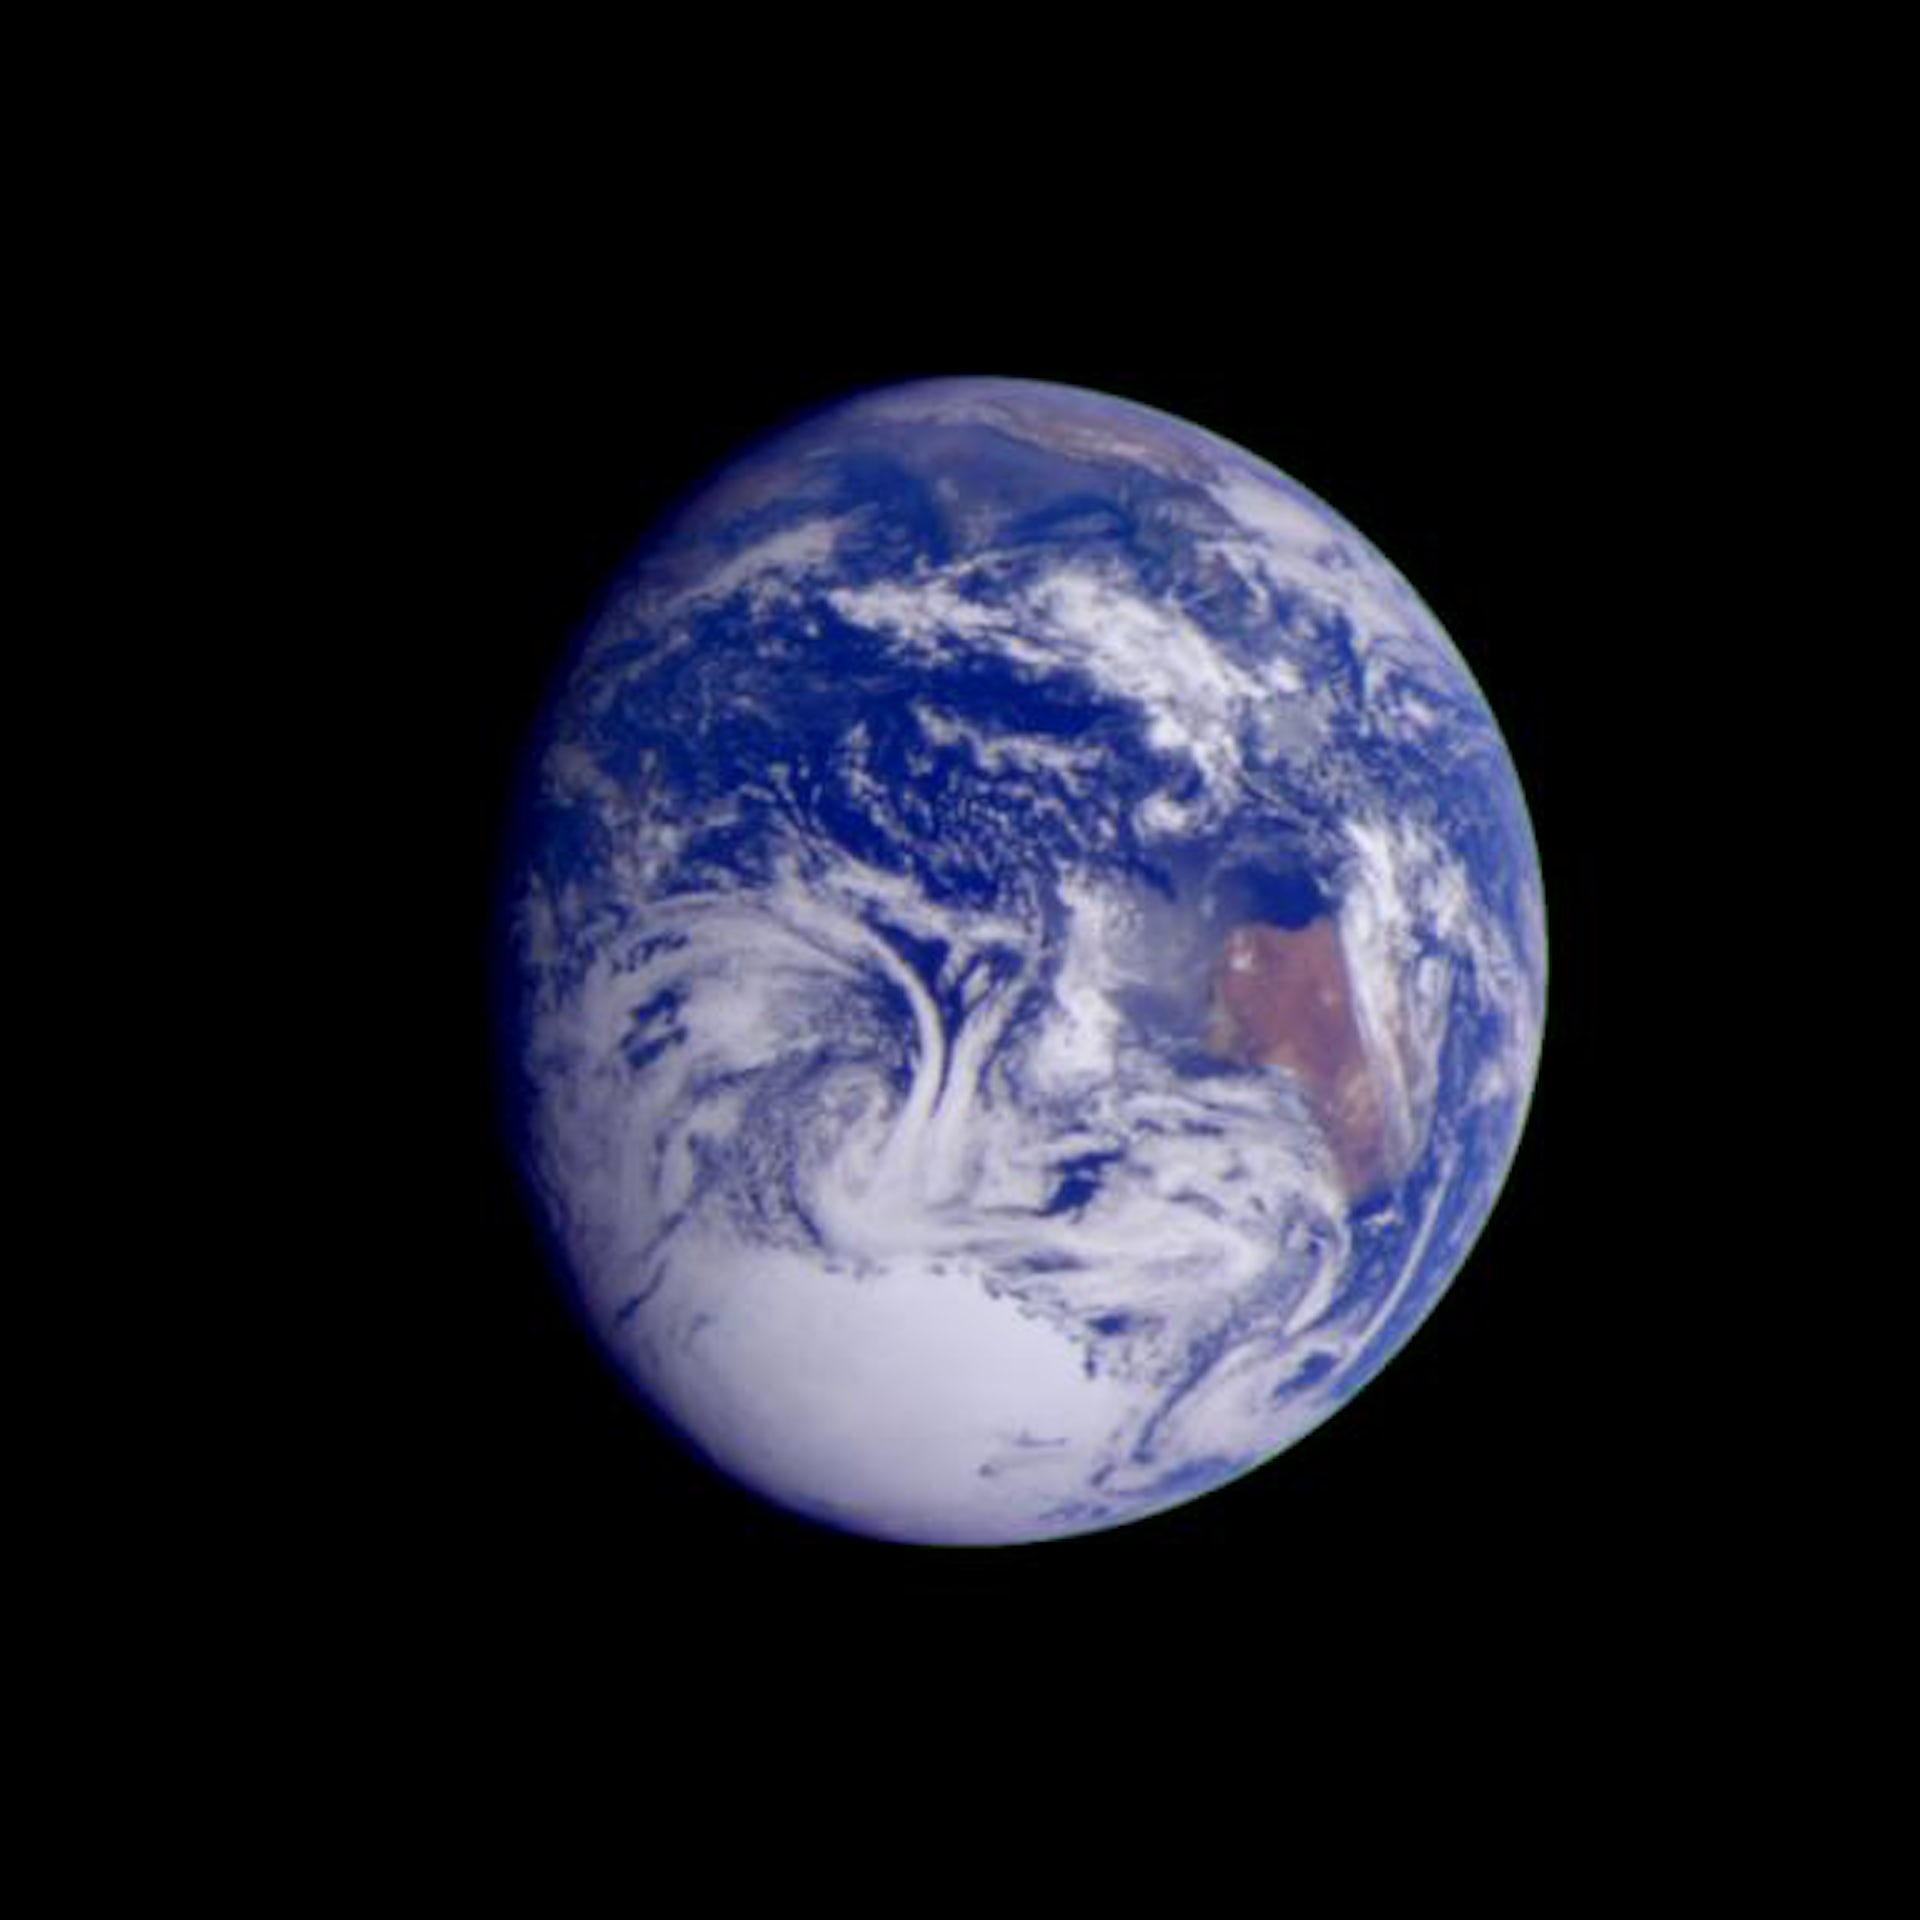 صورة التقطتها المركبة الفضائية جاليليو على مسافة 2.4 مليون كيلومتر.